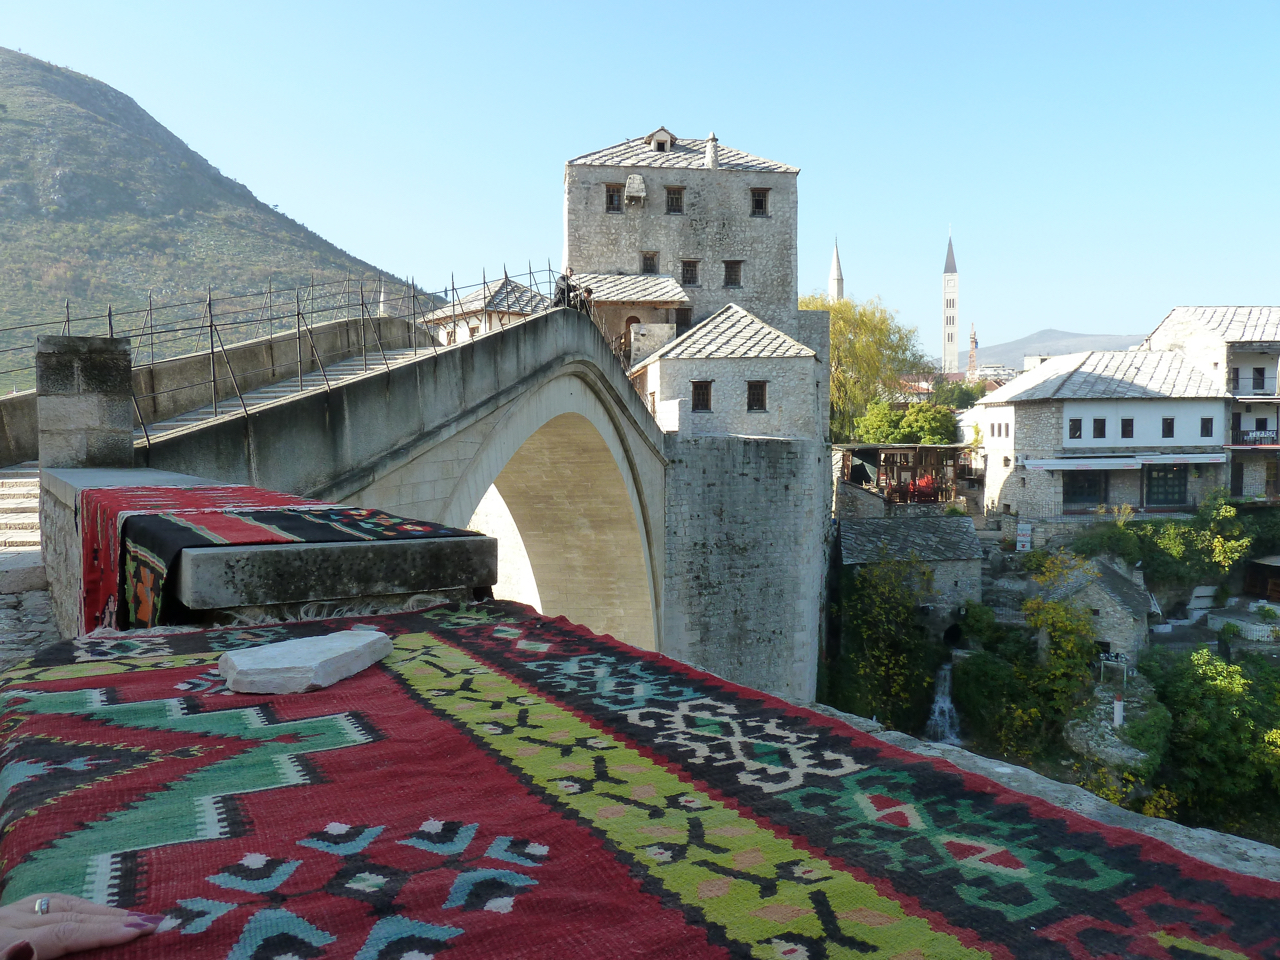 Questa foto l'hanno fatta i miei nel 2010 o 2011, è il ponte di Mostar. Da allora ho un grande desiderio di andare a visitare questa città.